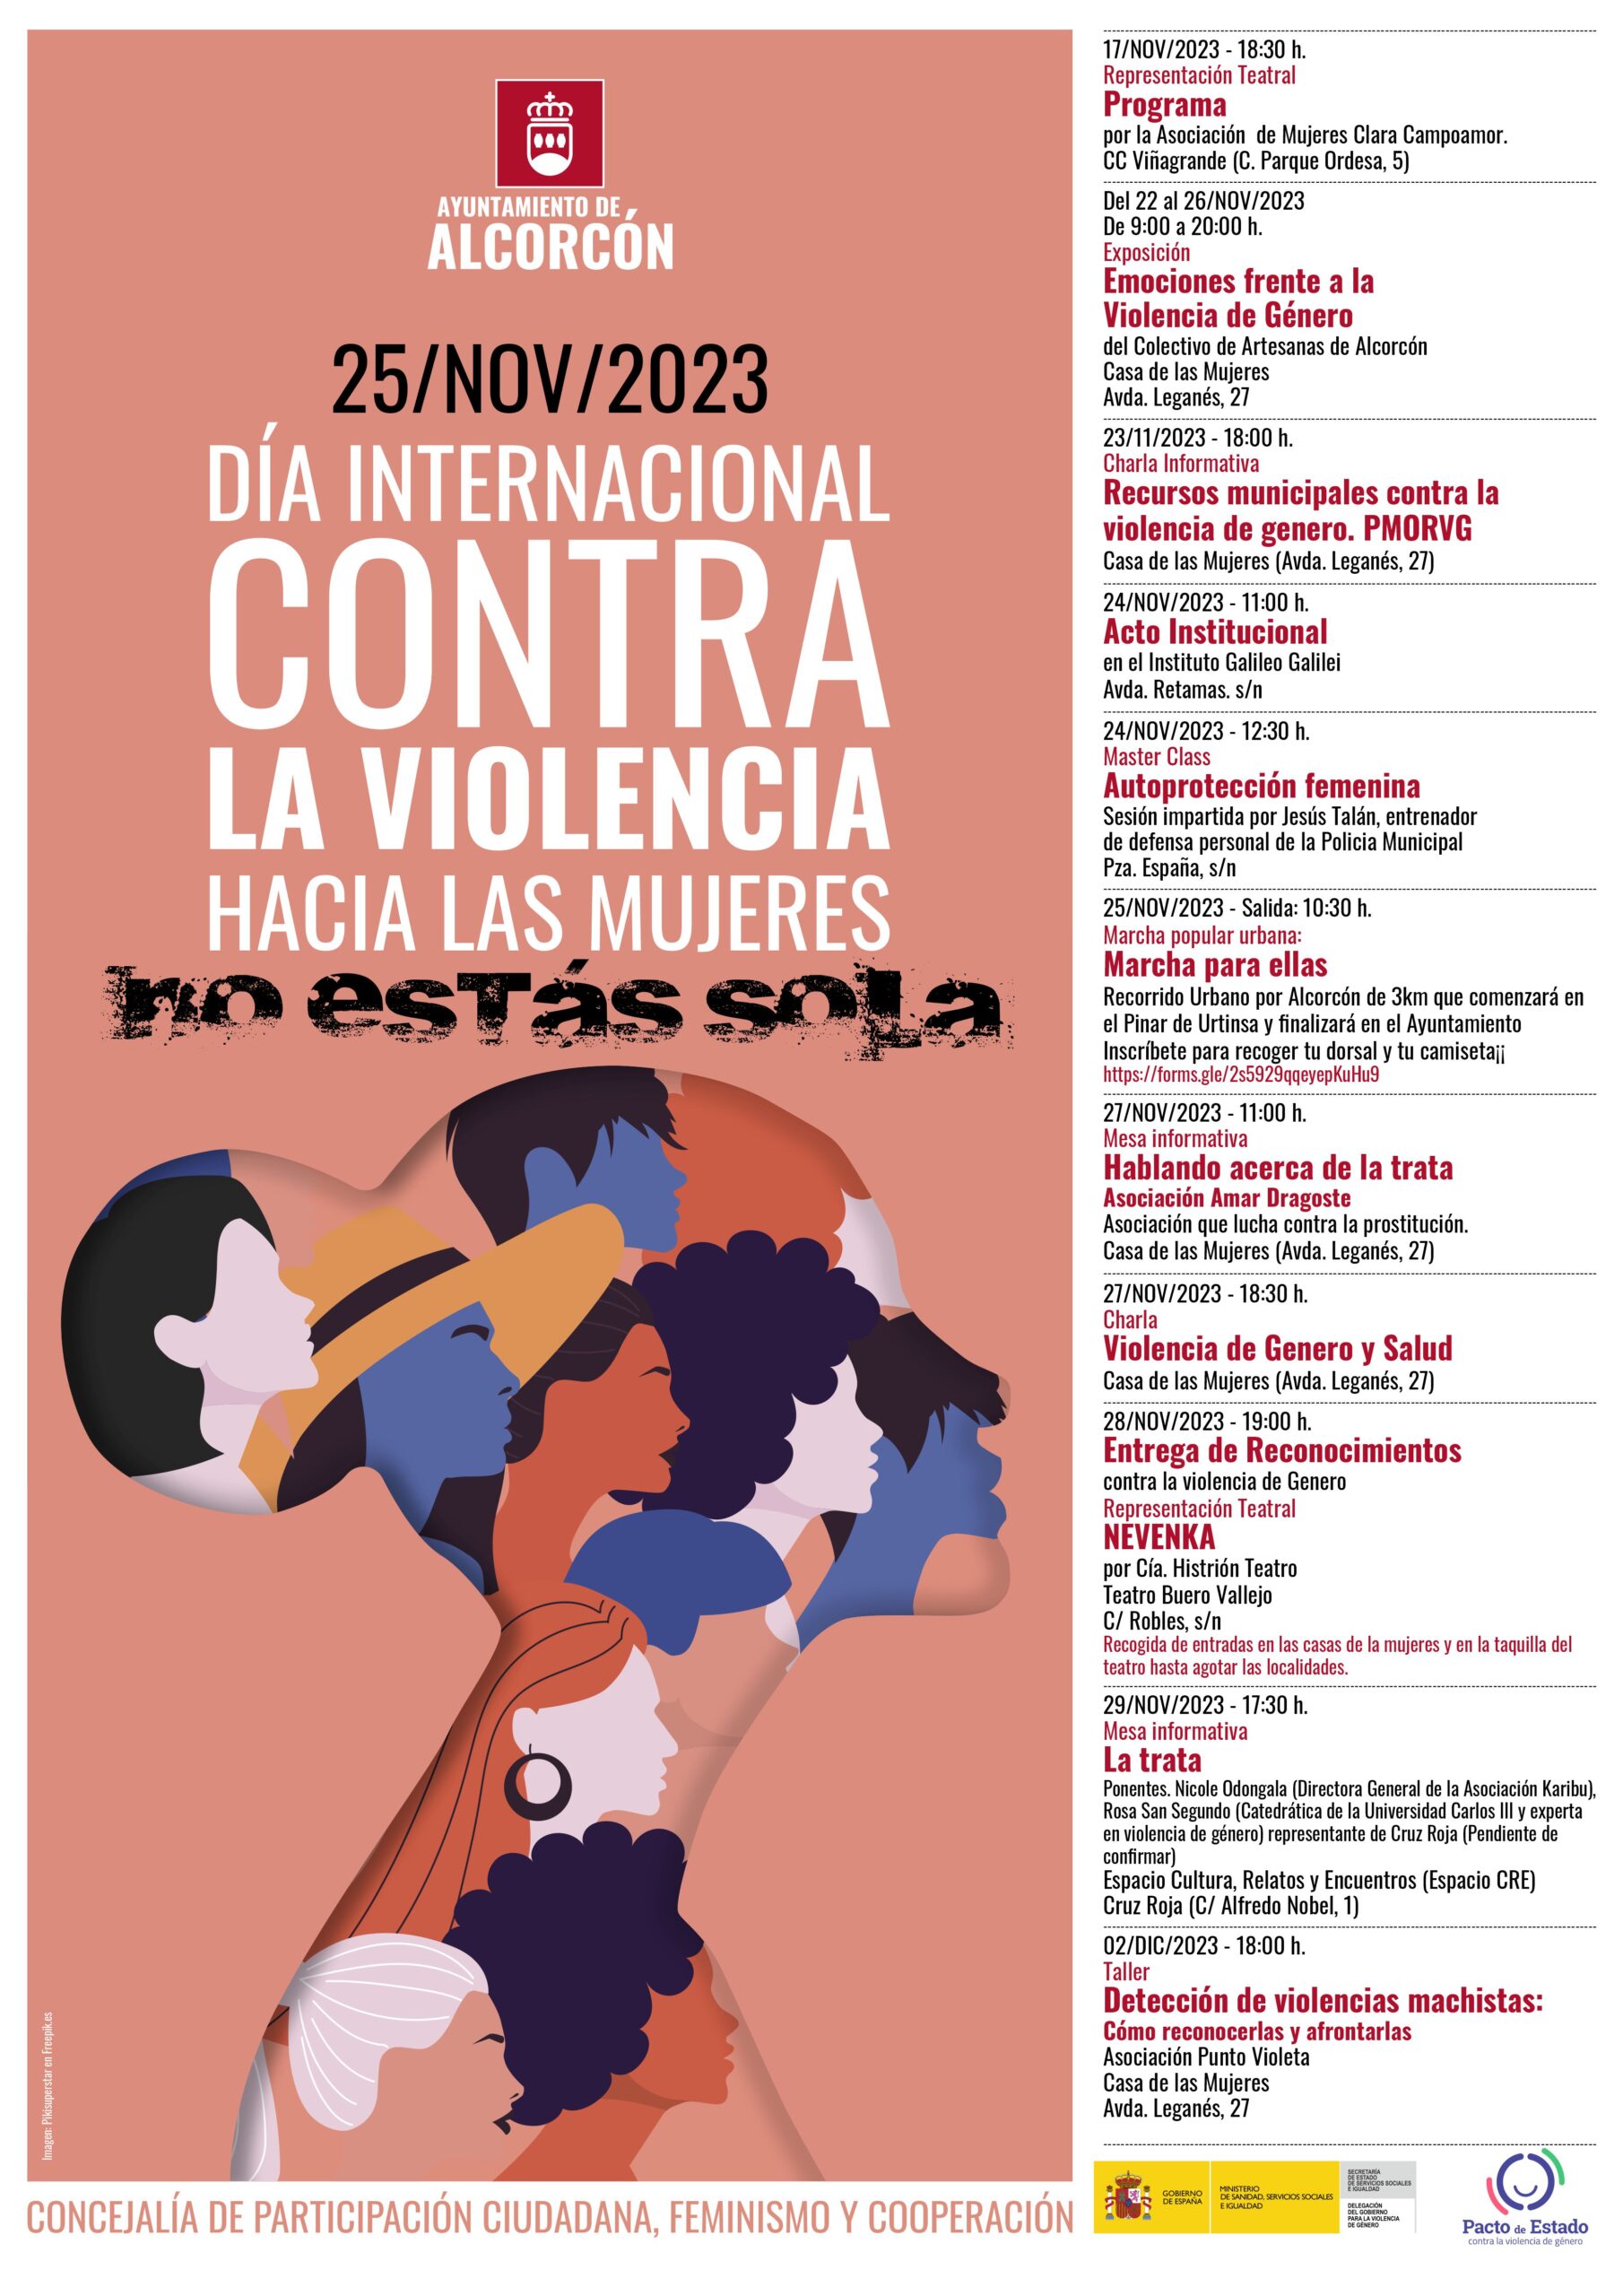 Actividades programadas del Día Internacional contra la Violencia hacia las Mujeres en Alcorcón